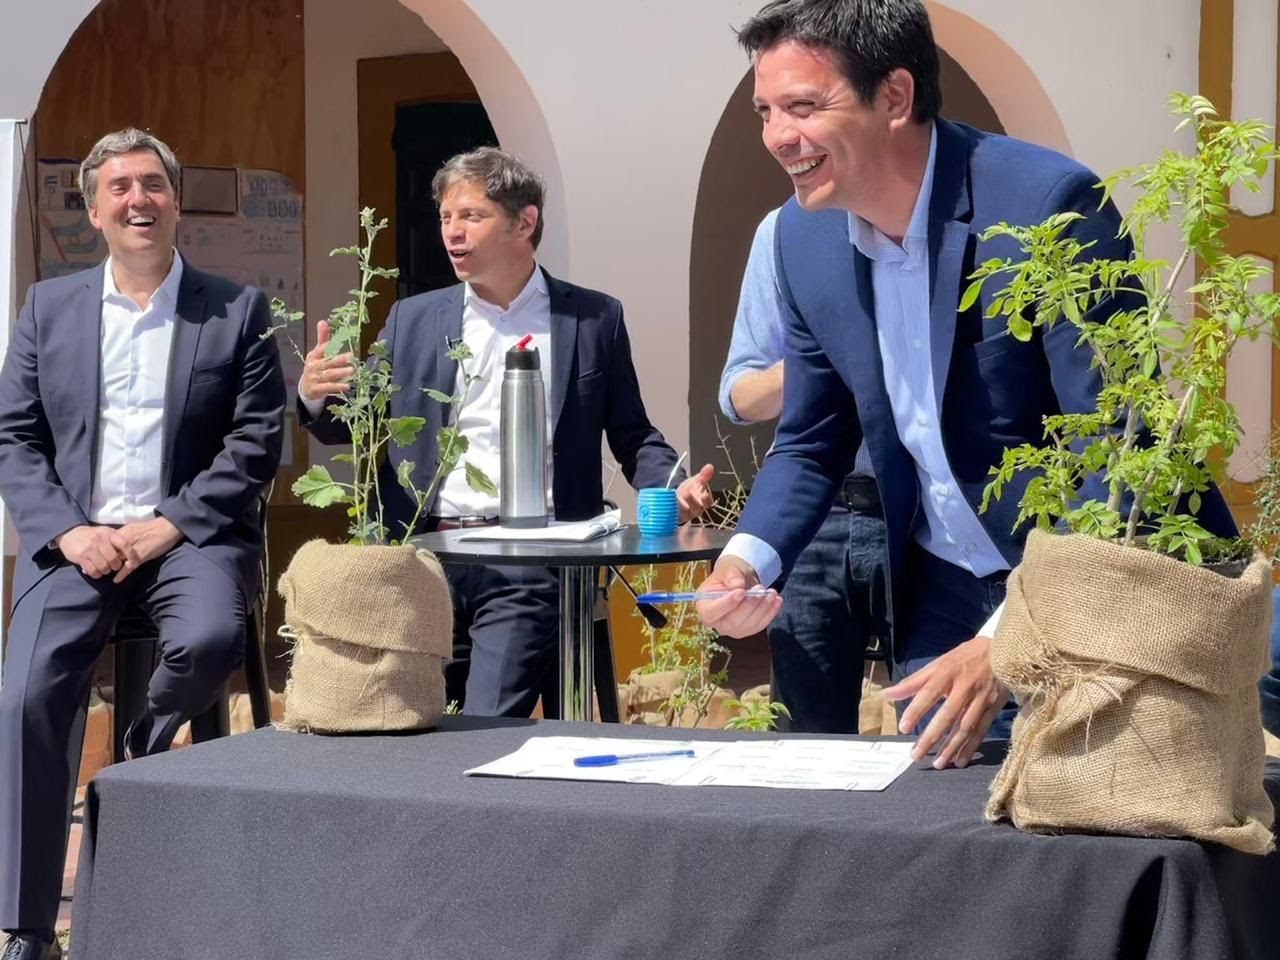 El Intendente Cardozo firmó un convenio con el gobernador Kicillof para fortalecer políticas ambientales en el Partido de La Costa